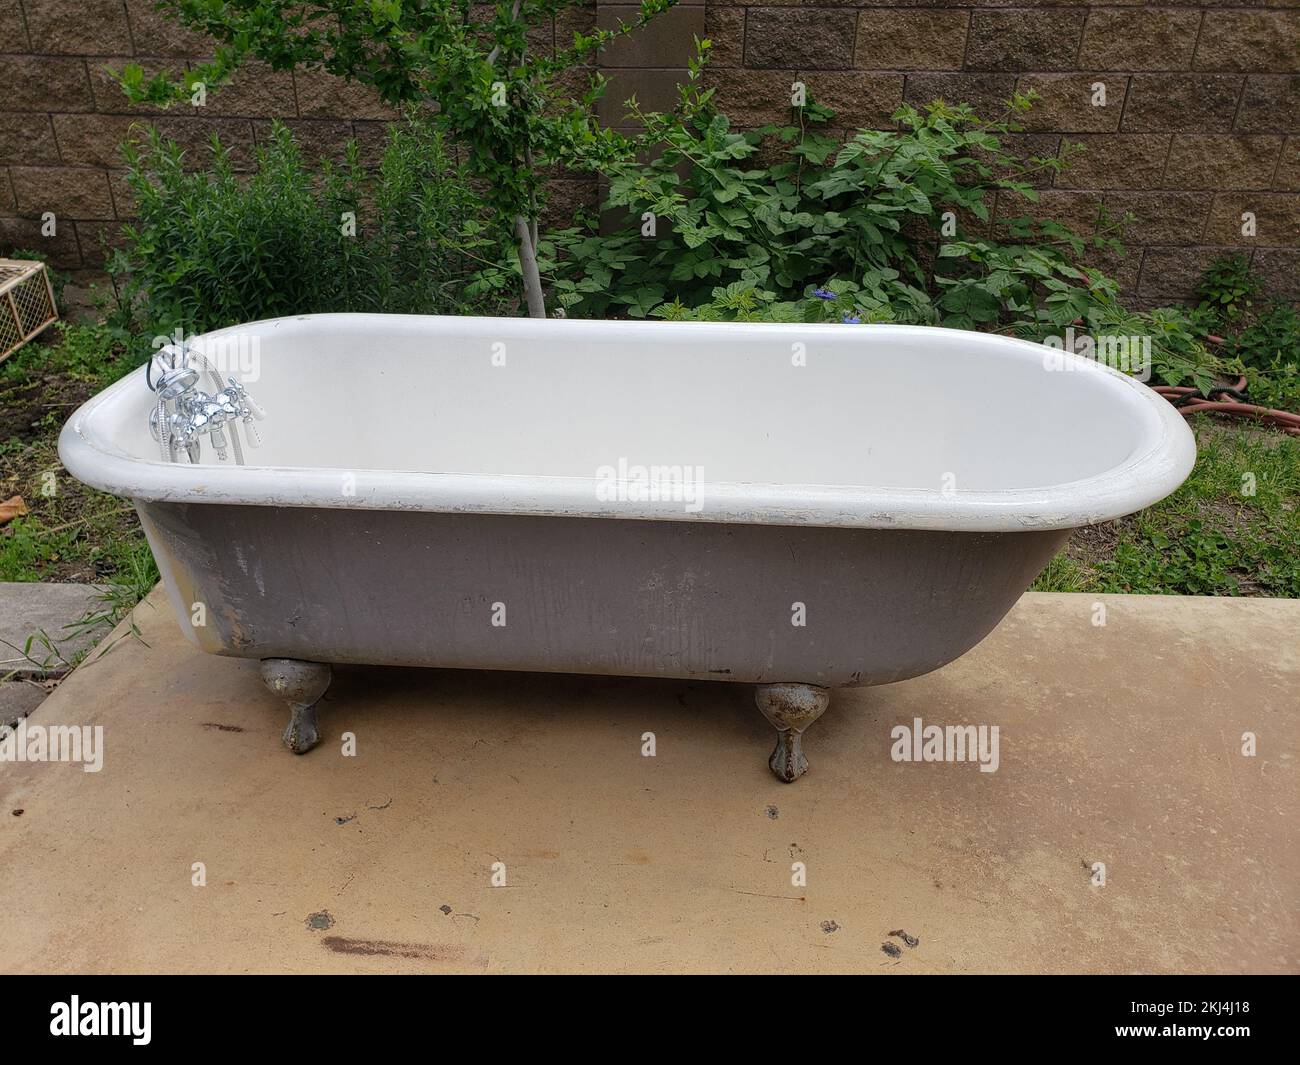 Vue sur une baignoire extérieure en fer blanc Photo Stock - Alamy